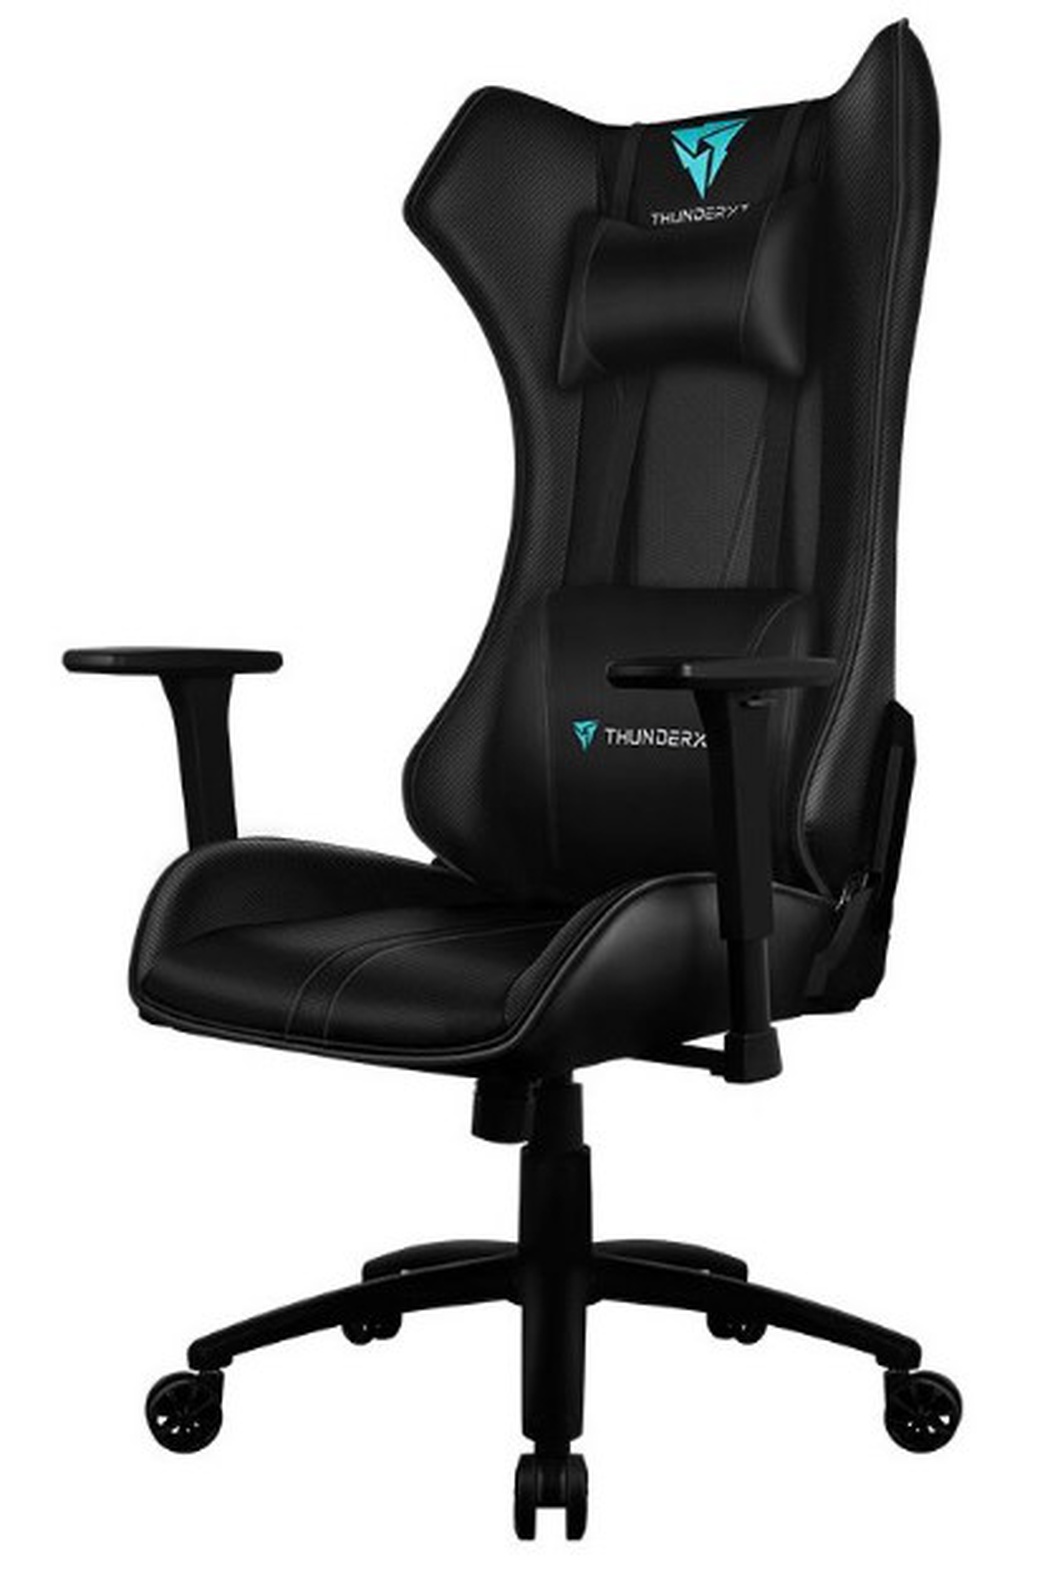 Игровое кресло ThunderX3 UC5 HEX черные AIR Tech, экокожа фото